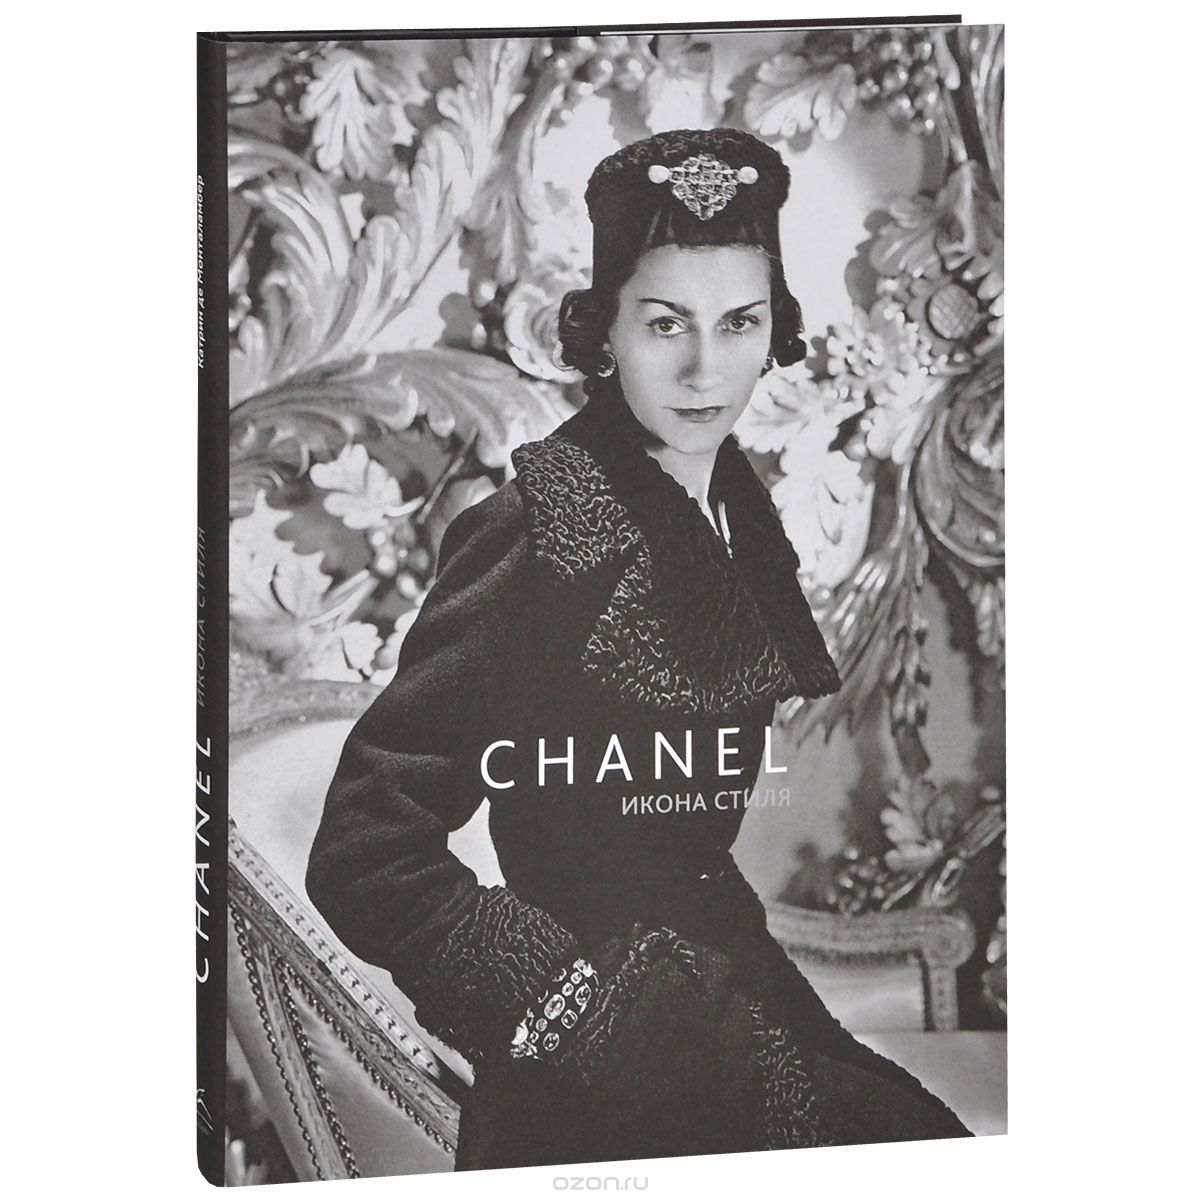 Скачать книгу "Chanel. Икона стиля, Катрин де Монталамбер"